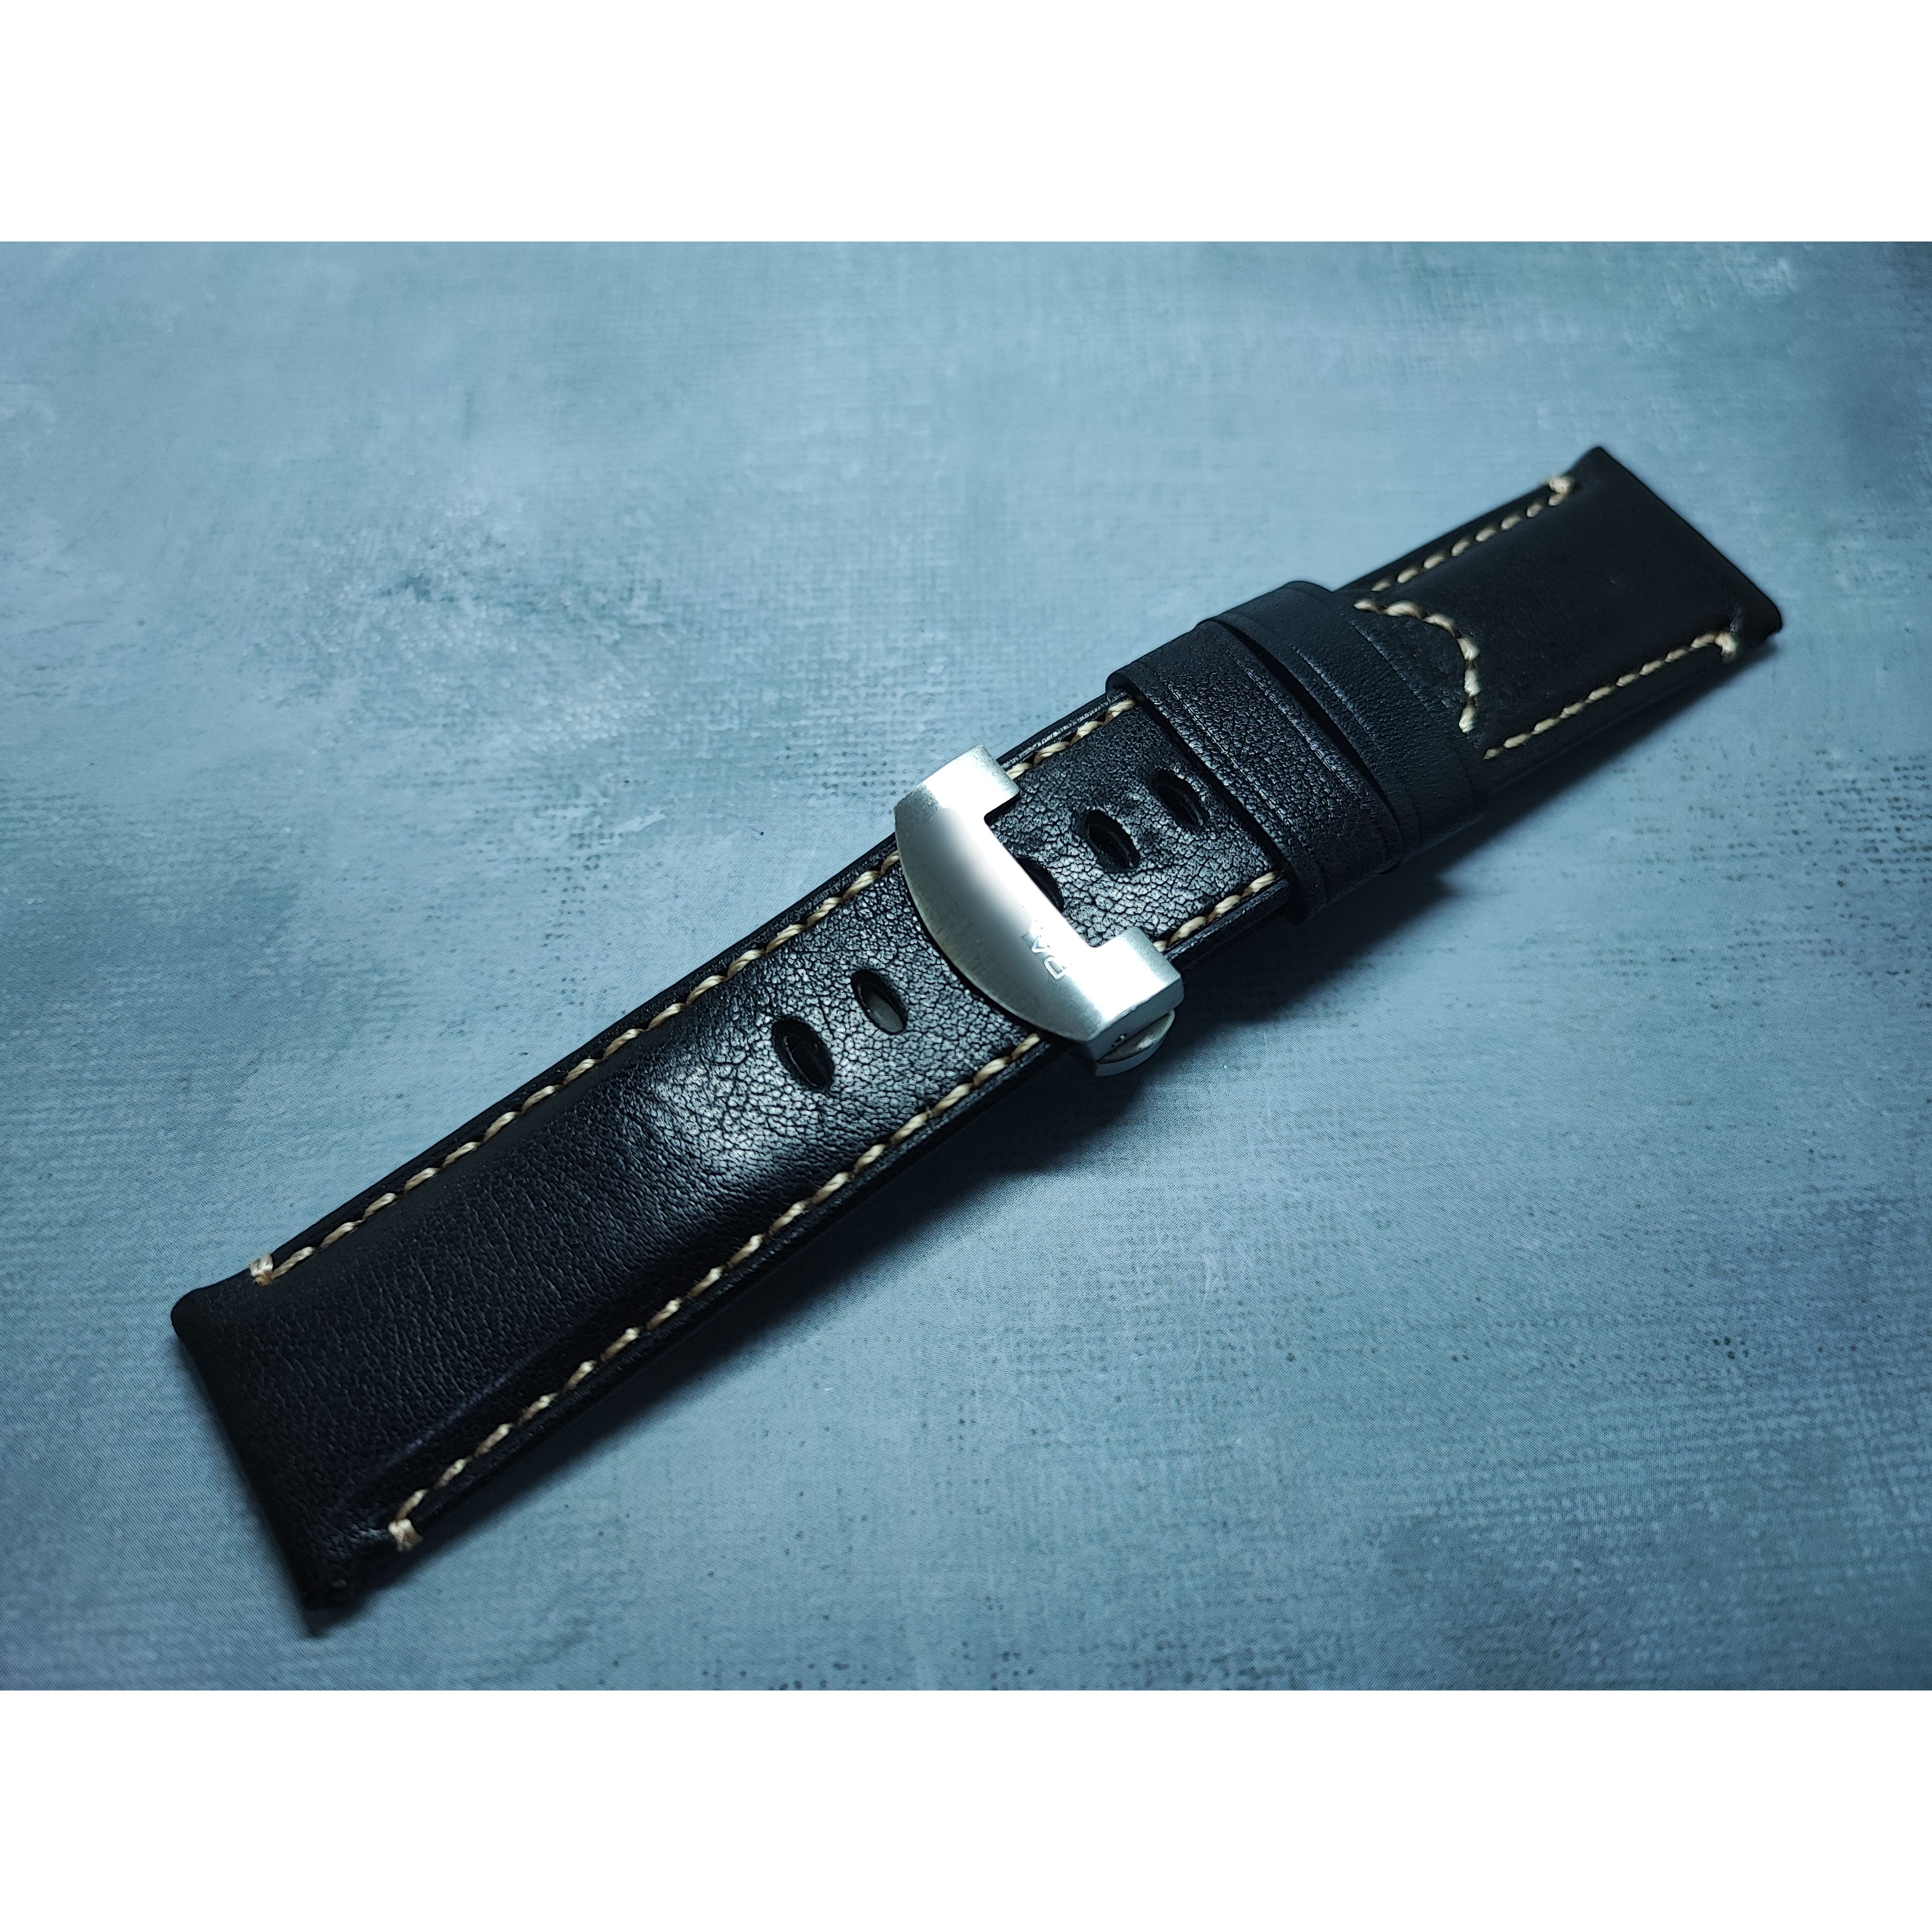 24mm 蝴蝶扣型錶帶沛納海Panerai 1/1型錶帶牛皮錶帶| LeatherStrapConcept